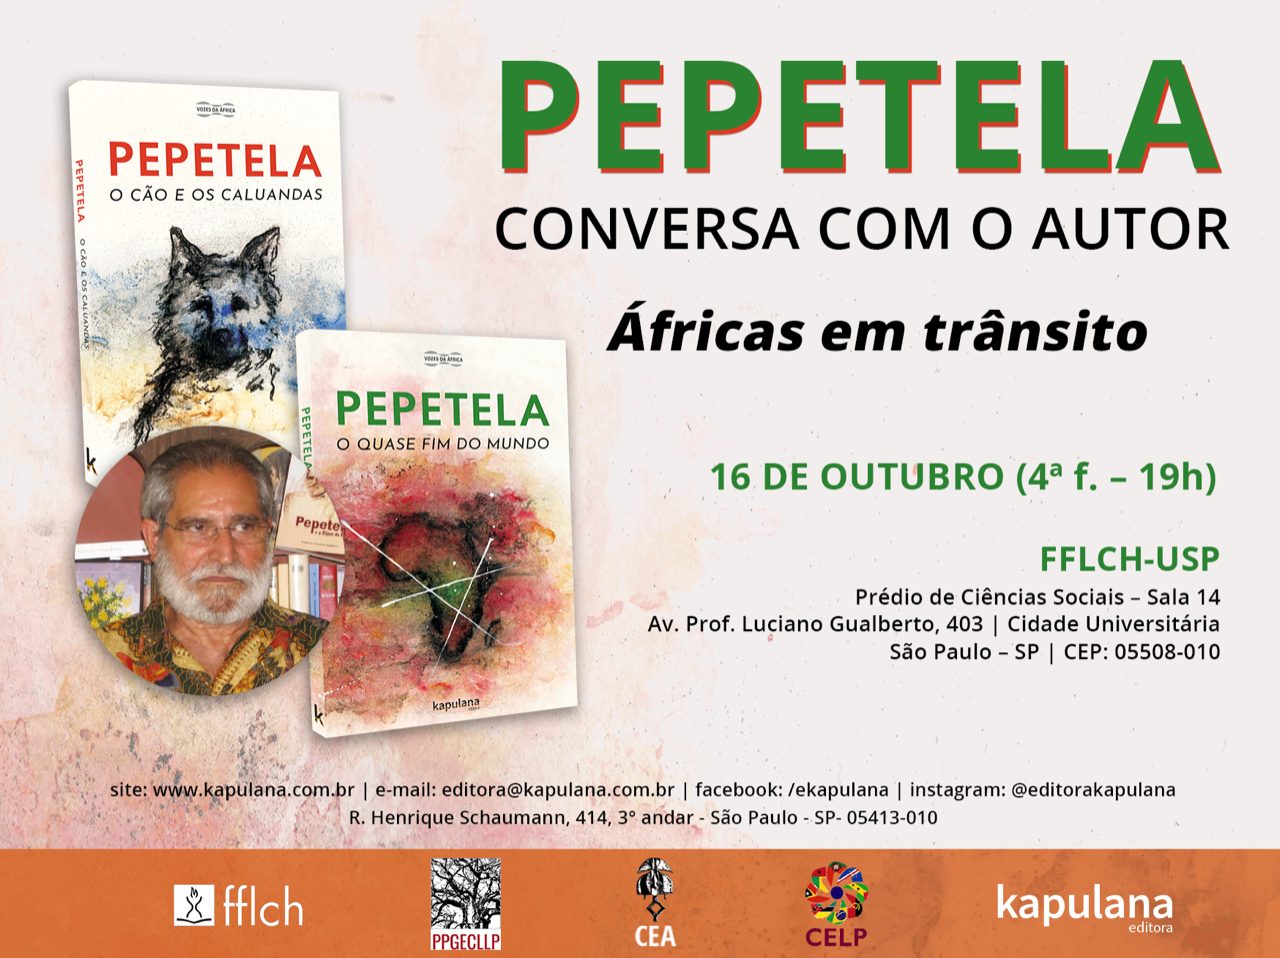 Conversa com o autor angolano PEPETELA